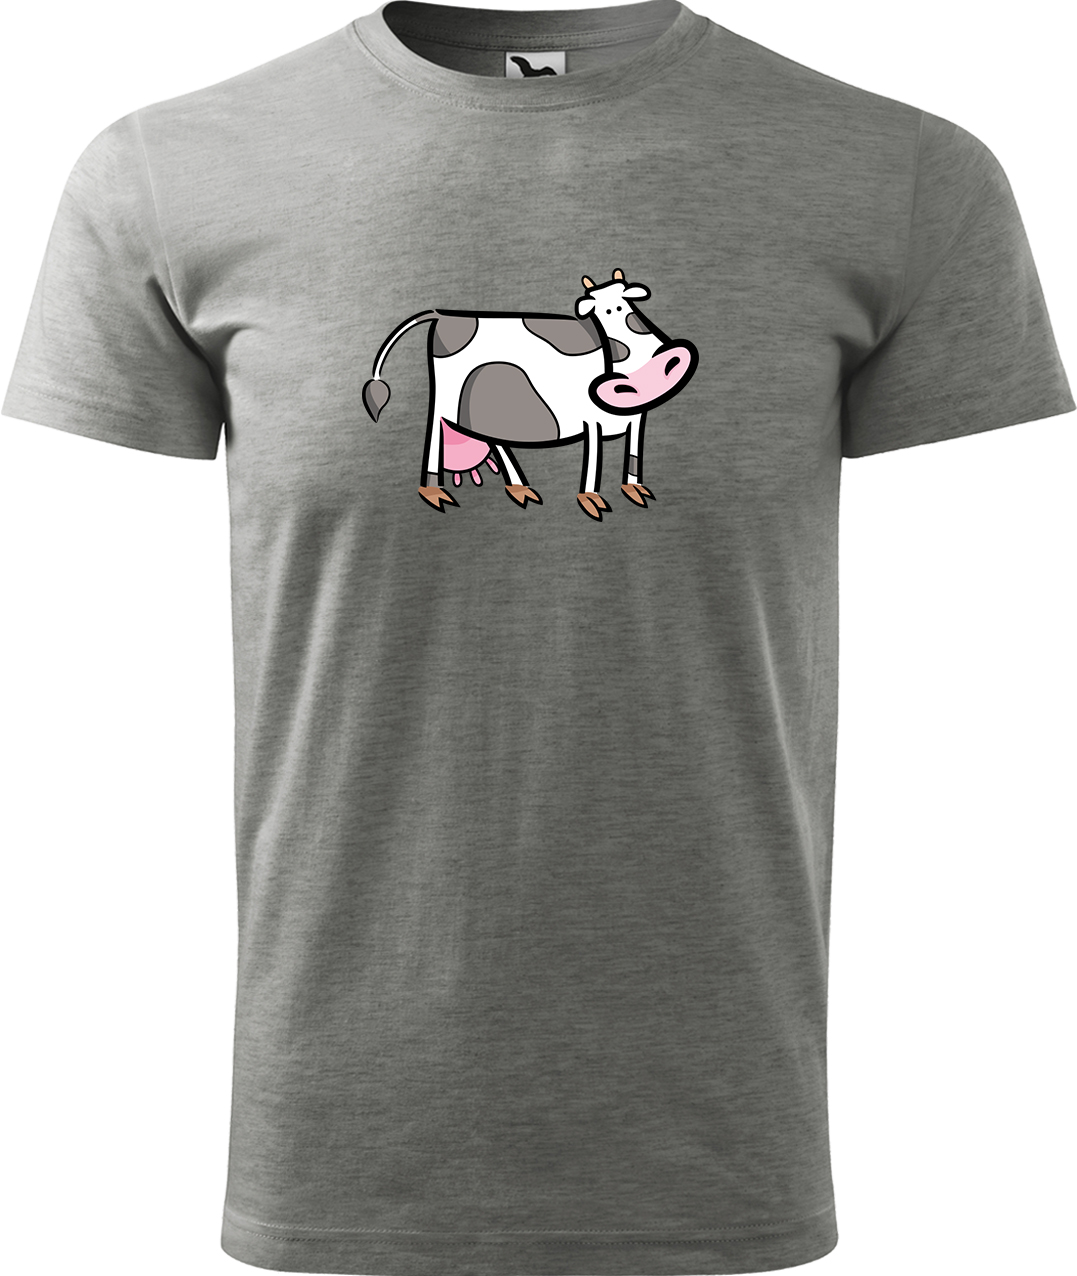 Pánské tričko s krávou - Kravička Velikost: M, Barva: Tmavě šedý melír (12), Střih: pánský